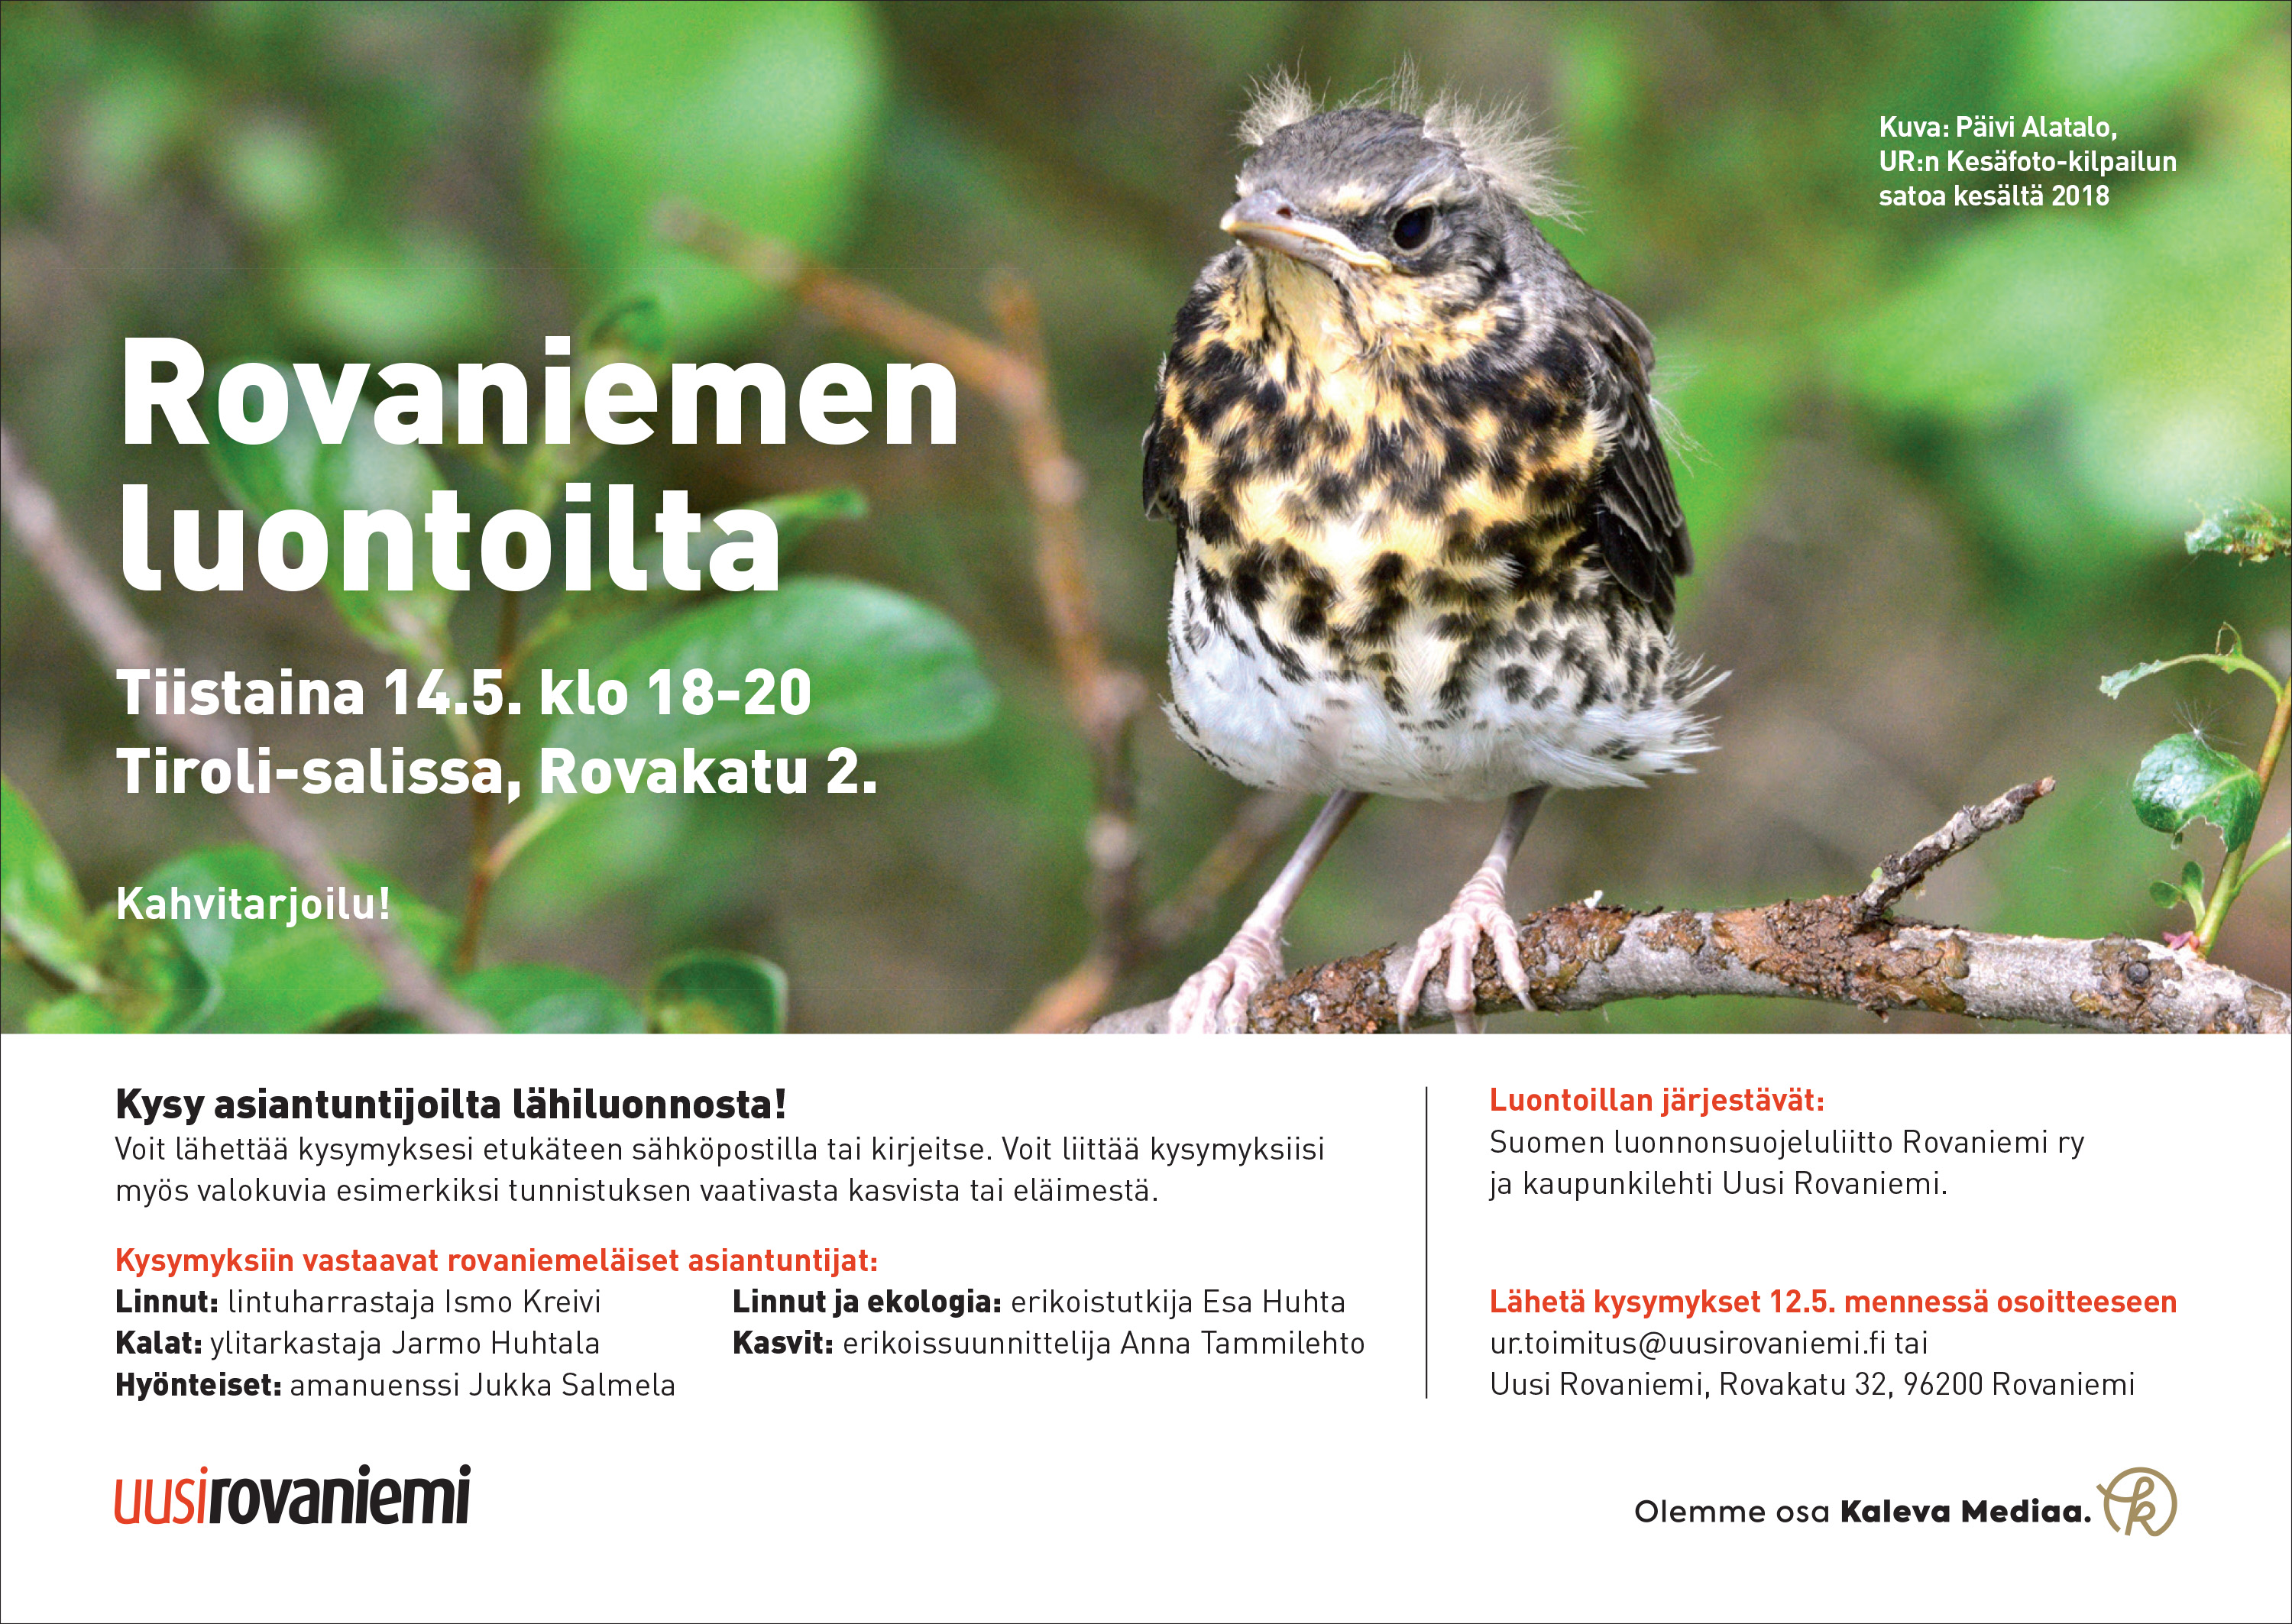 Varma kevään merkki: Rovaniemen luontoilta - Rovaniemen yhdistys